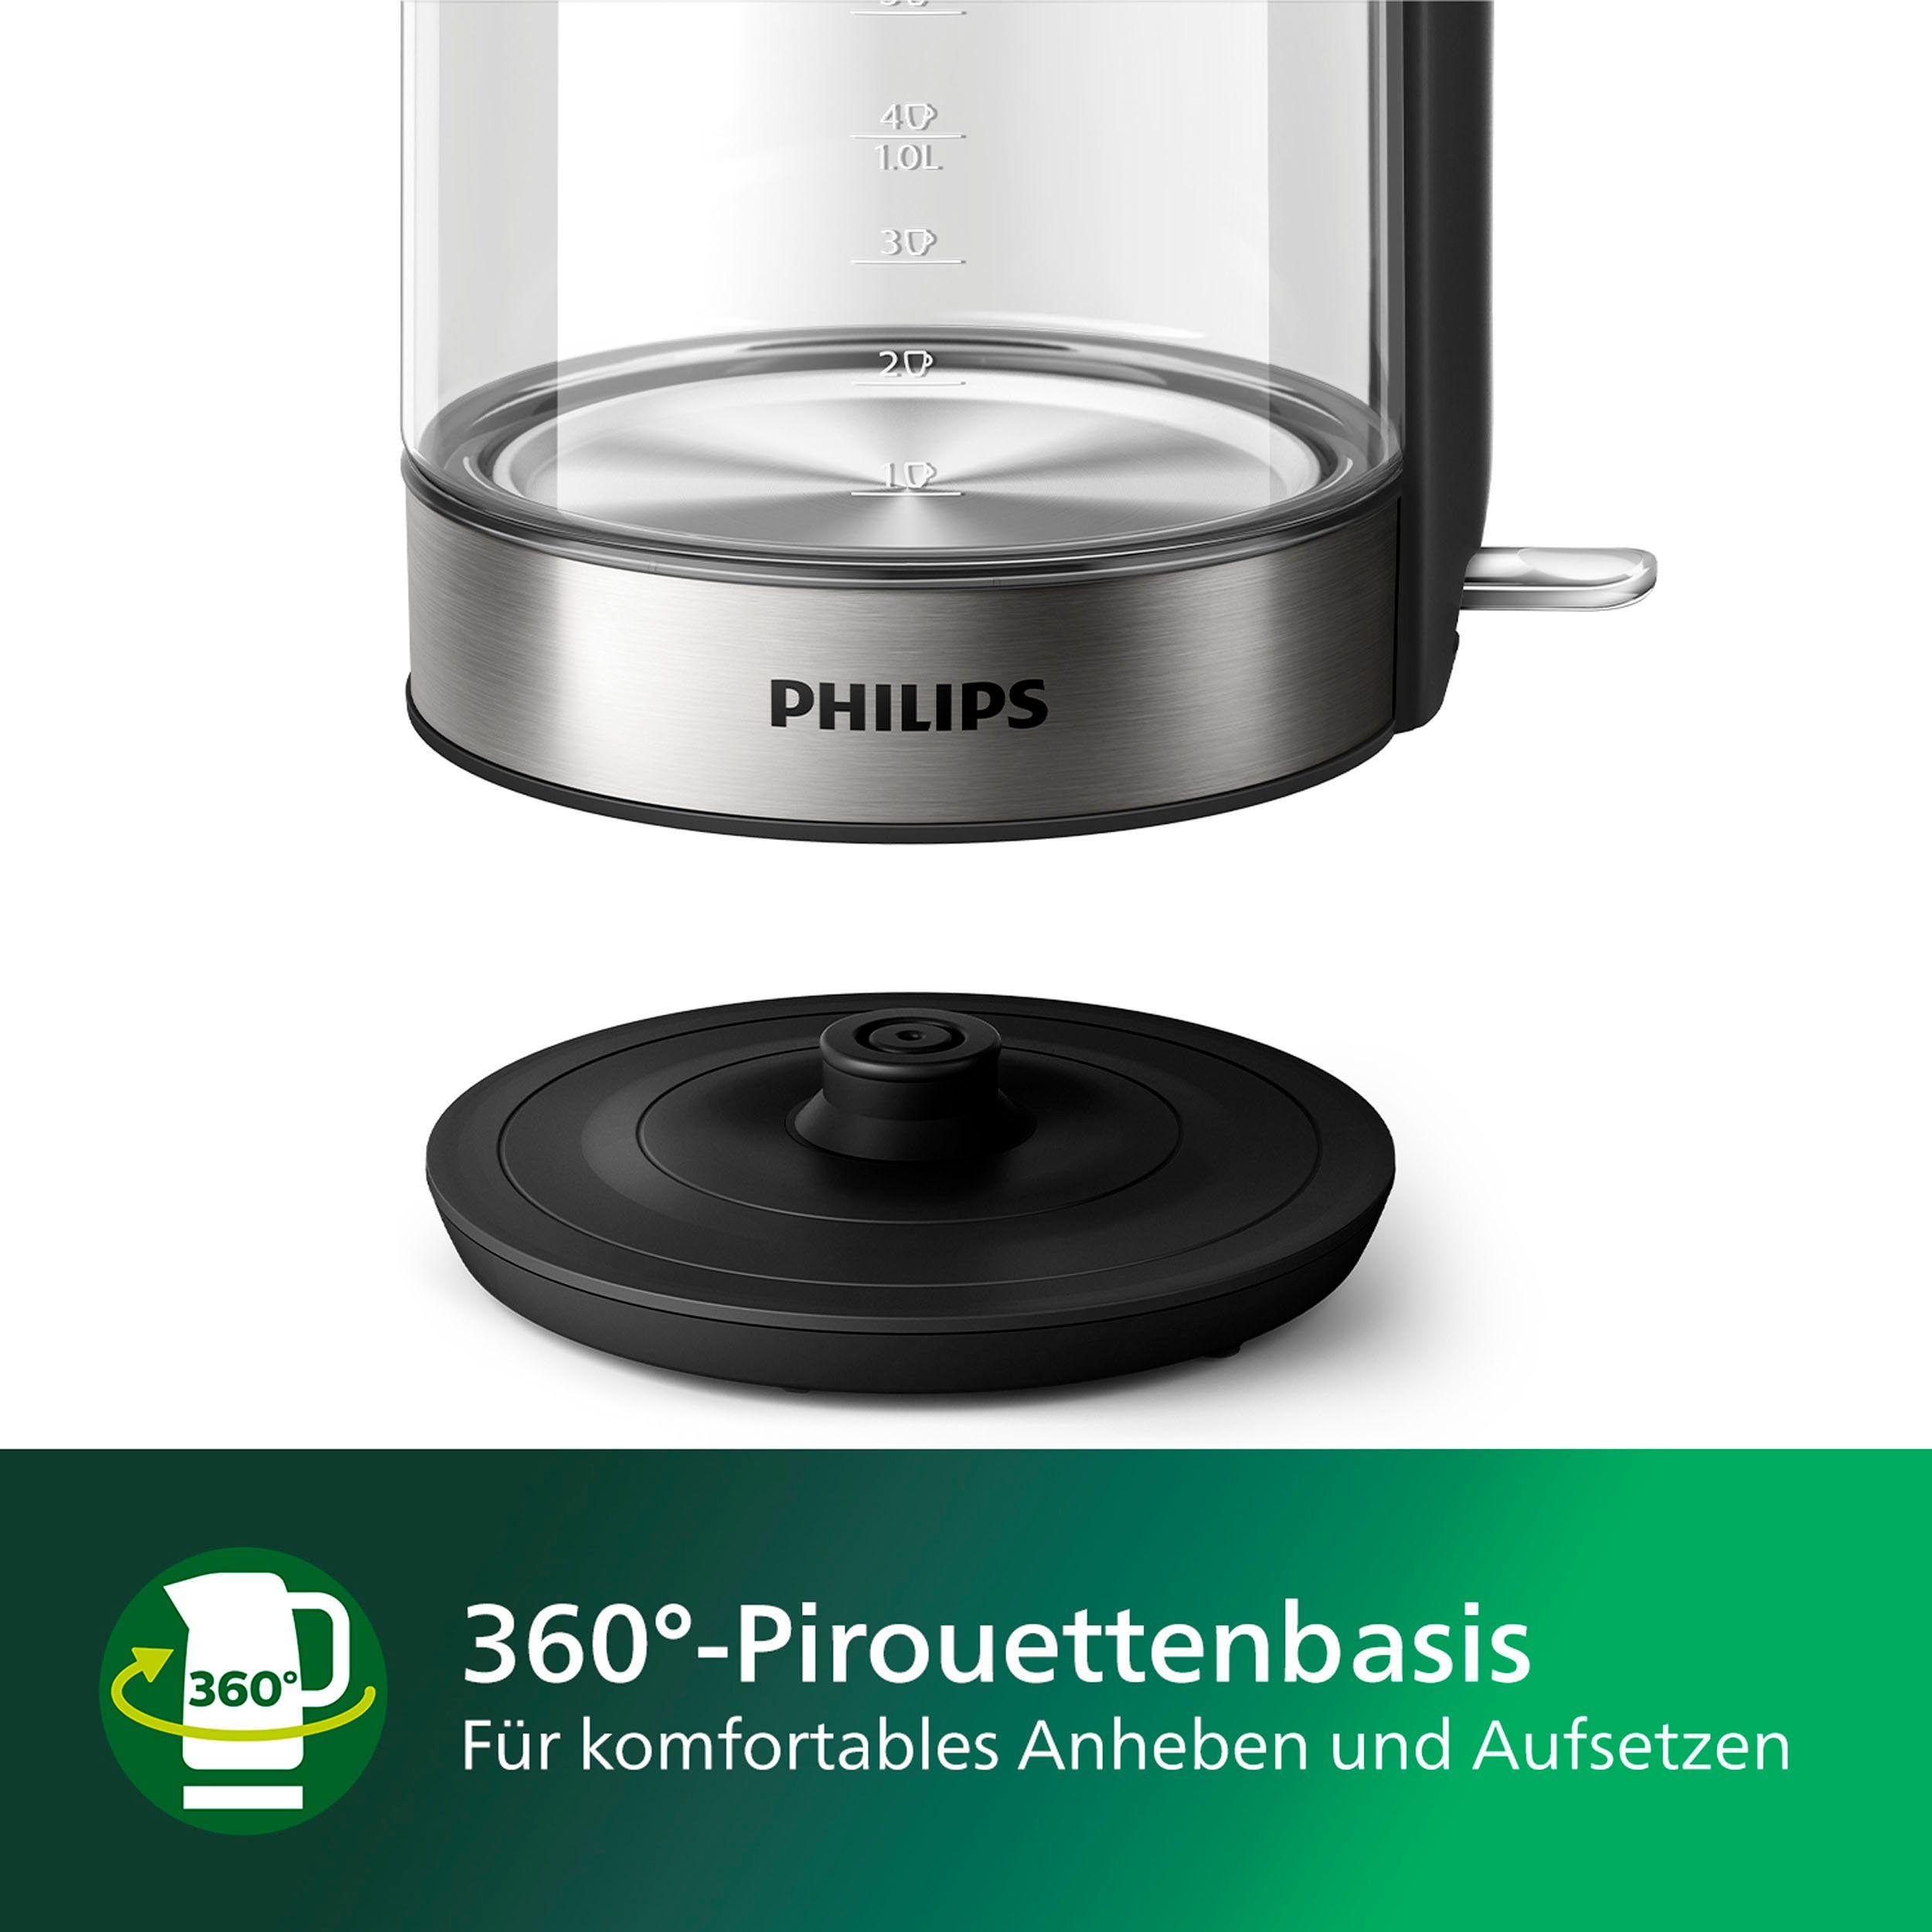 2200 l, 5000 Philips 1,7 Wasserkocher W HD9339/80, Series